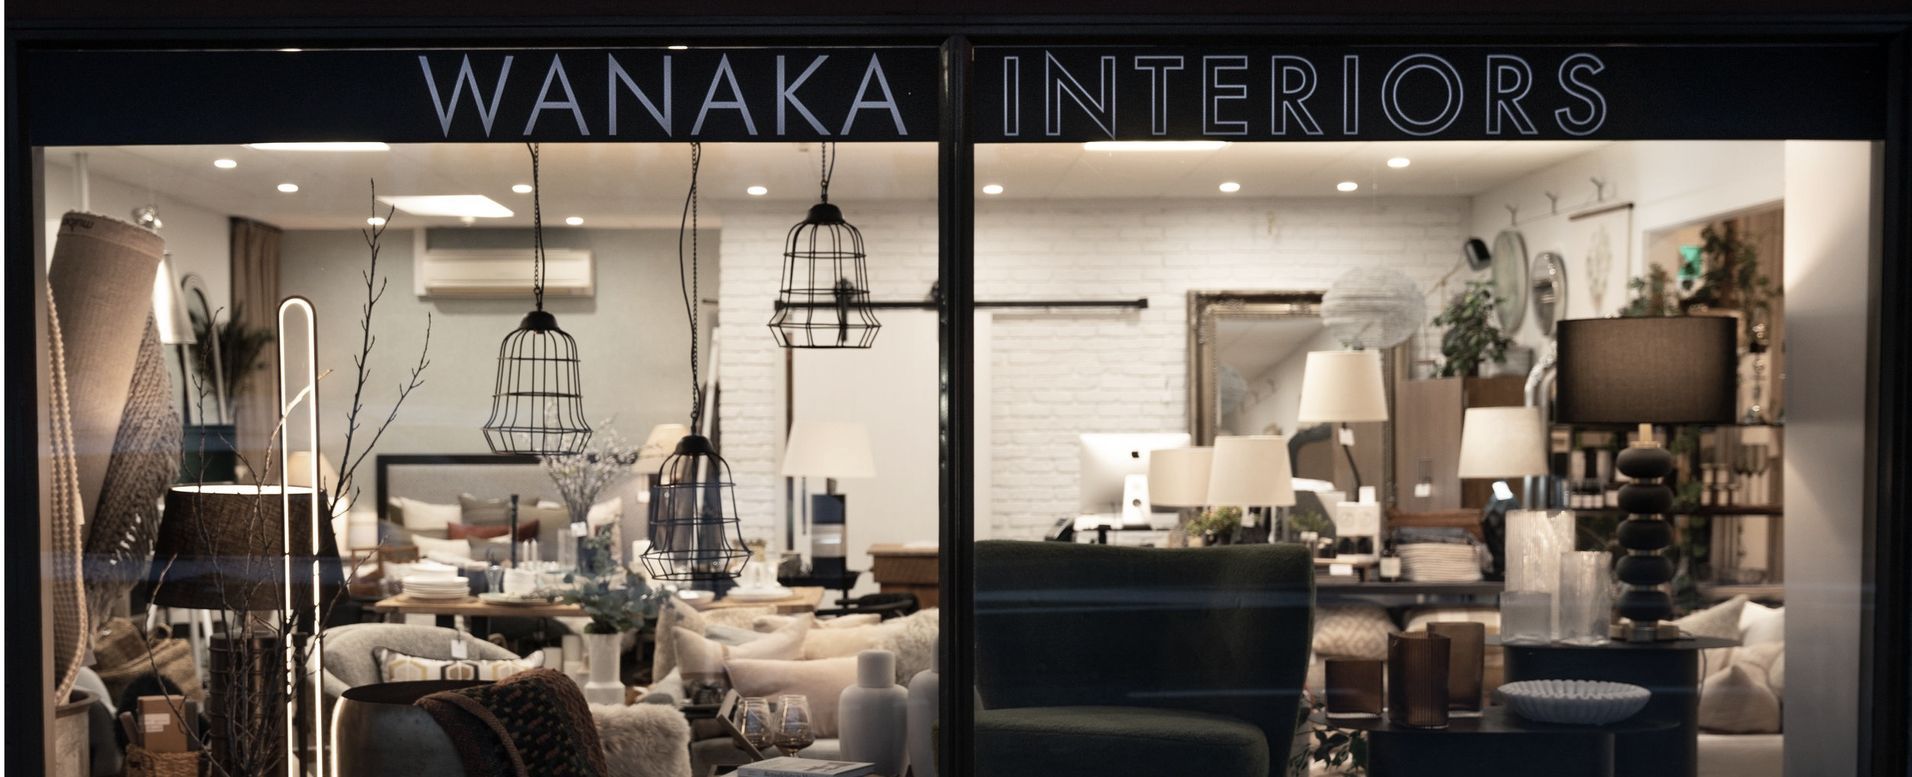 Wanaka Interiors Banner image